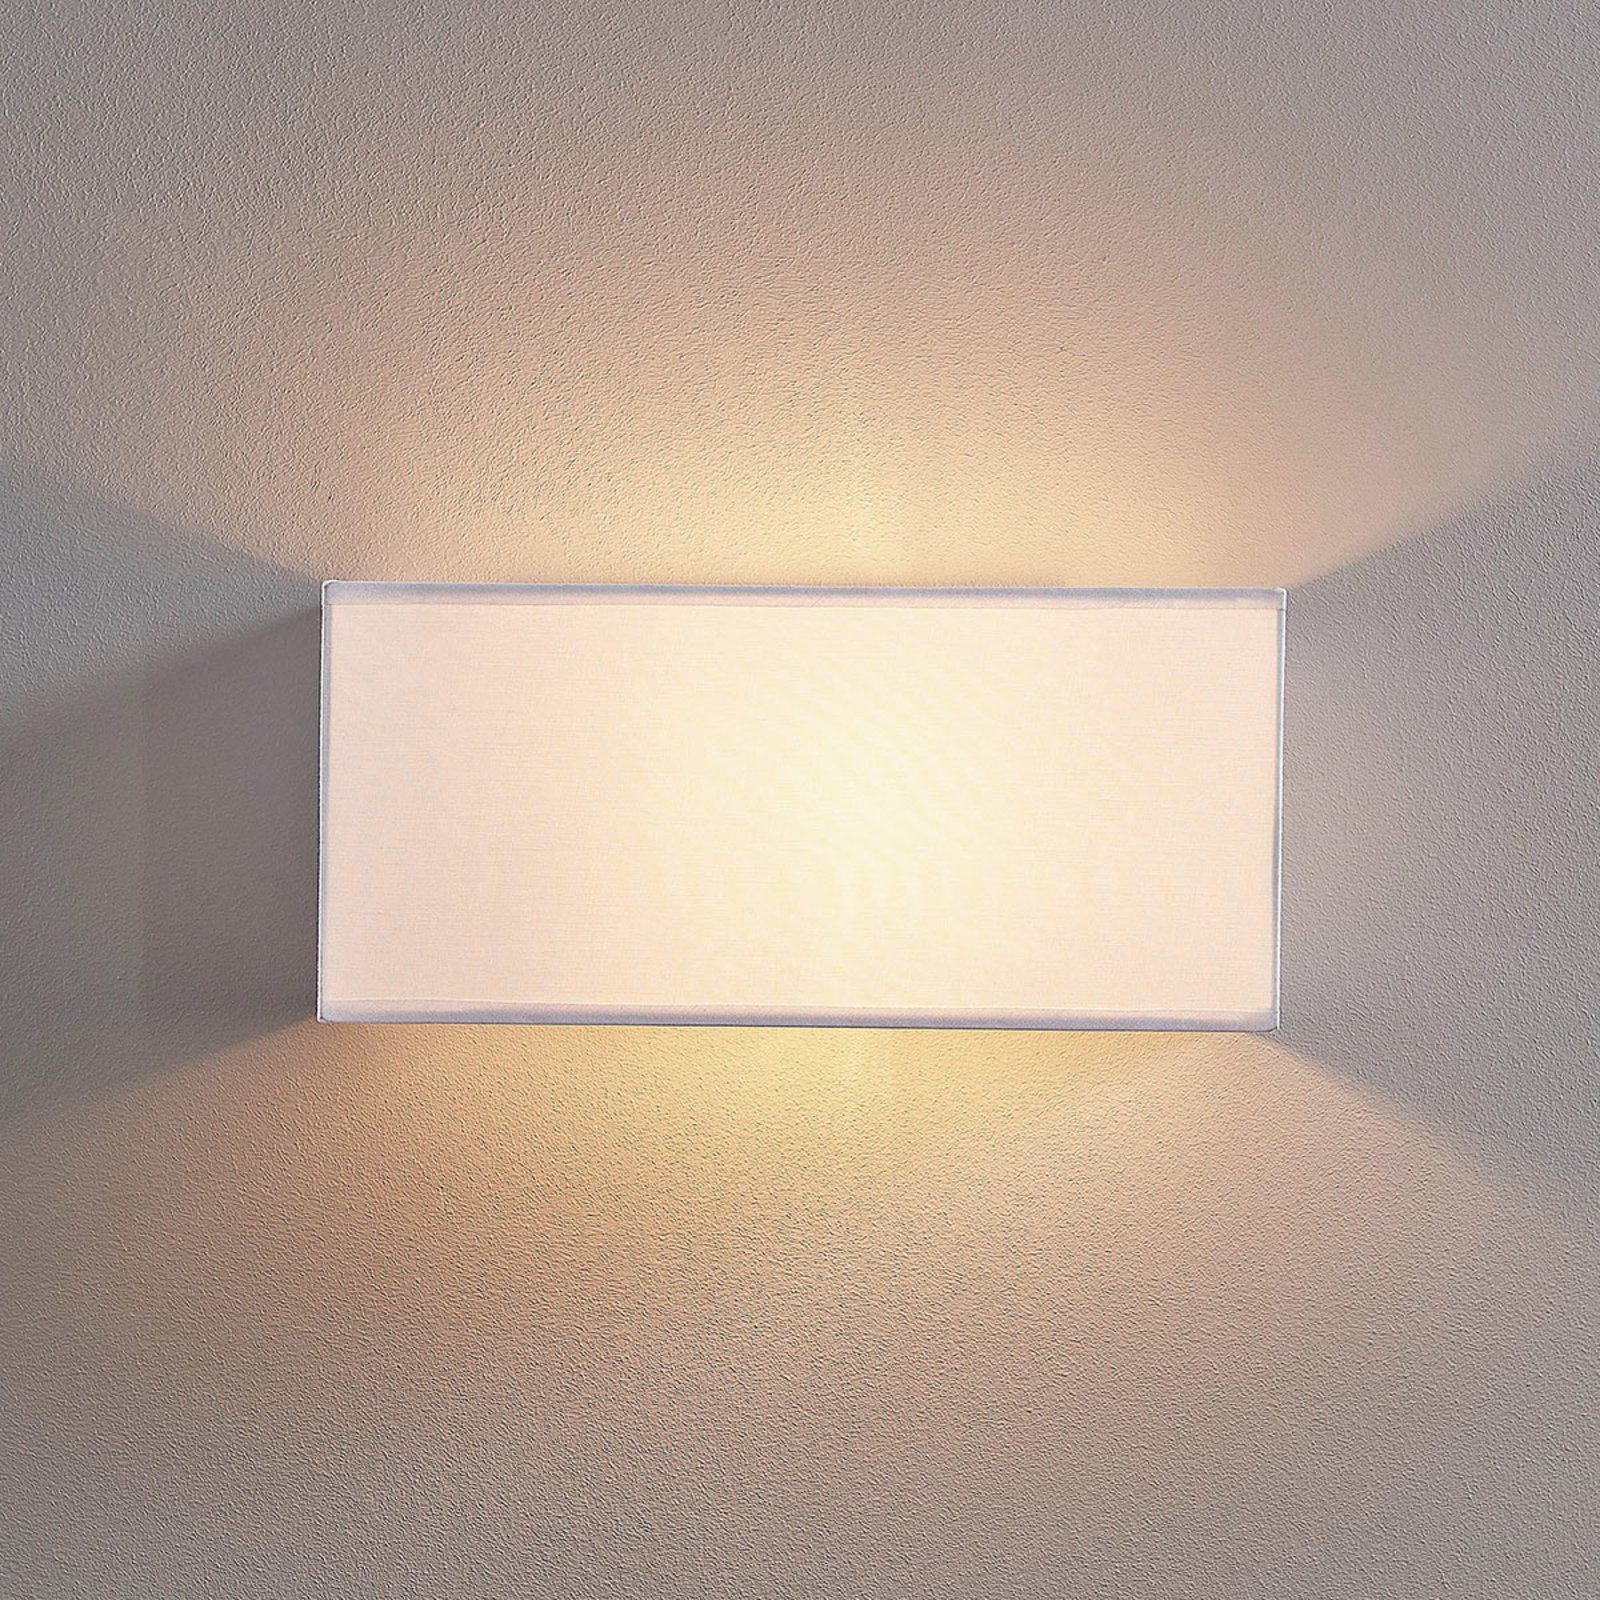 Lampa ścienna Adea, 30 cm, kątowa, biała